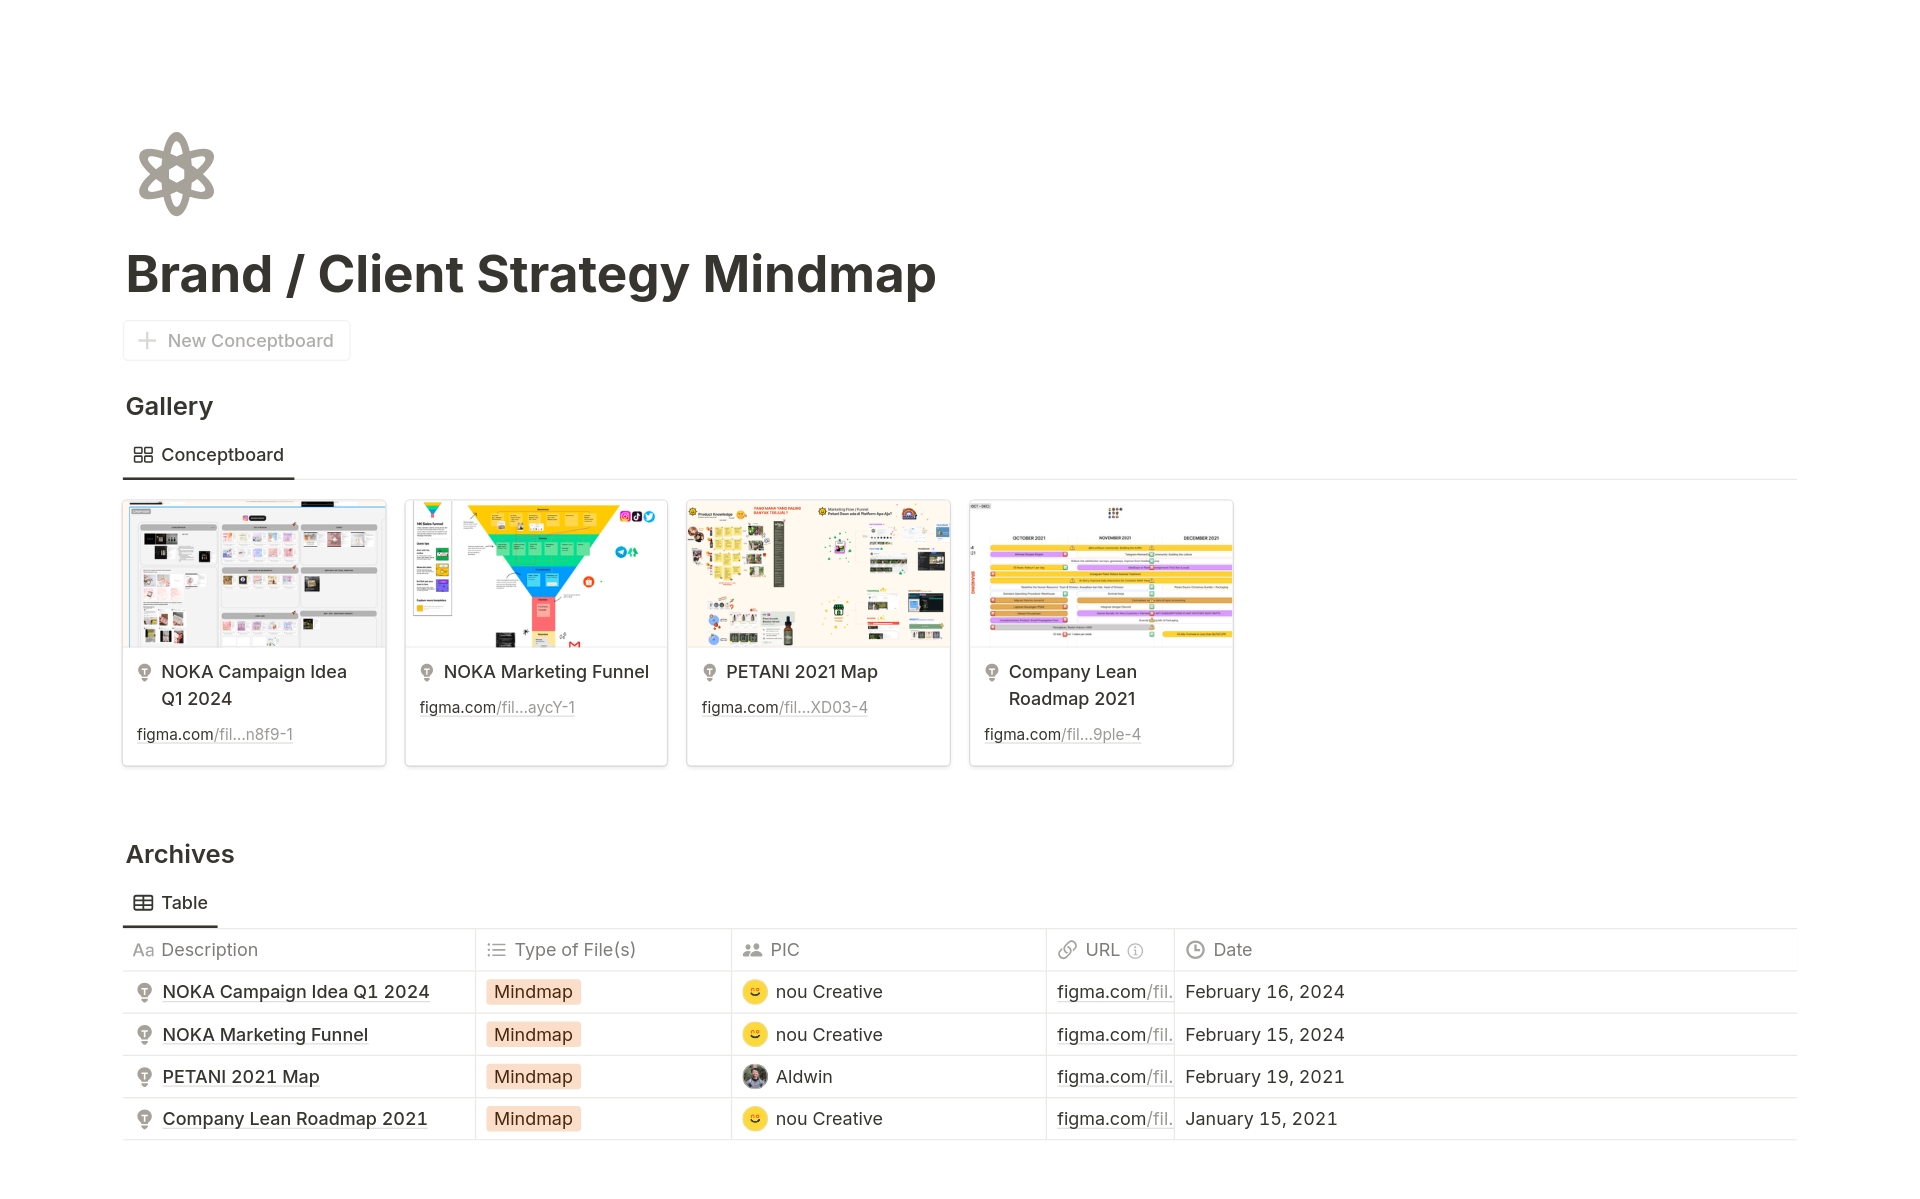 Uma prévia do modelo para Brand / Client Strategy and Mindmap